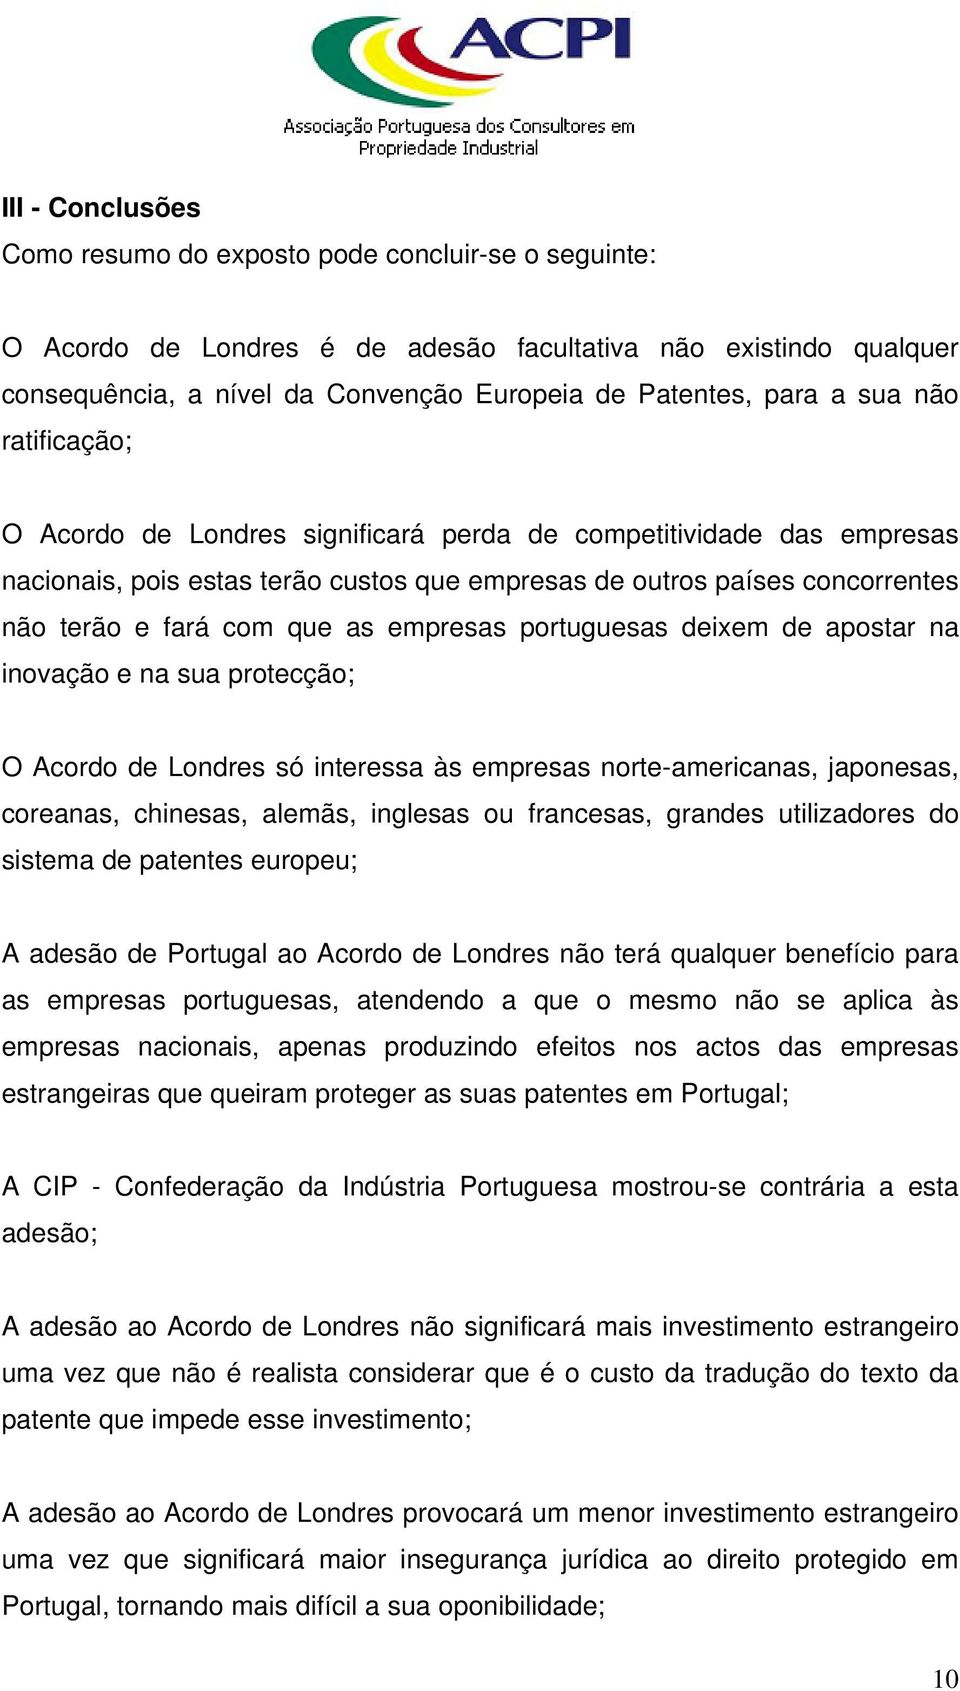 empresas portuguesas deixem de apostar na inovação e na sua protecção; O Acordo de Londres só interessa às empresas norte-americanas, japonesas, coreanas, chinesas, alemãs, inglesas ou francesas,